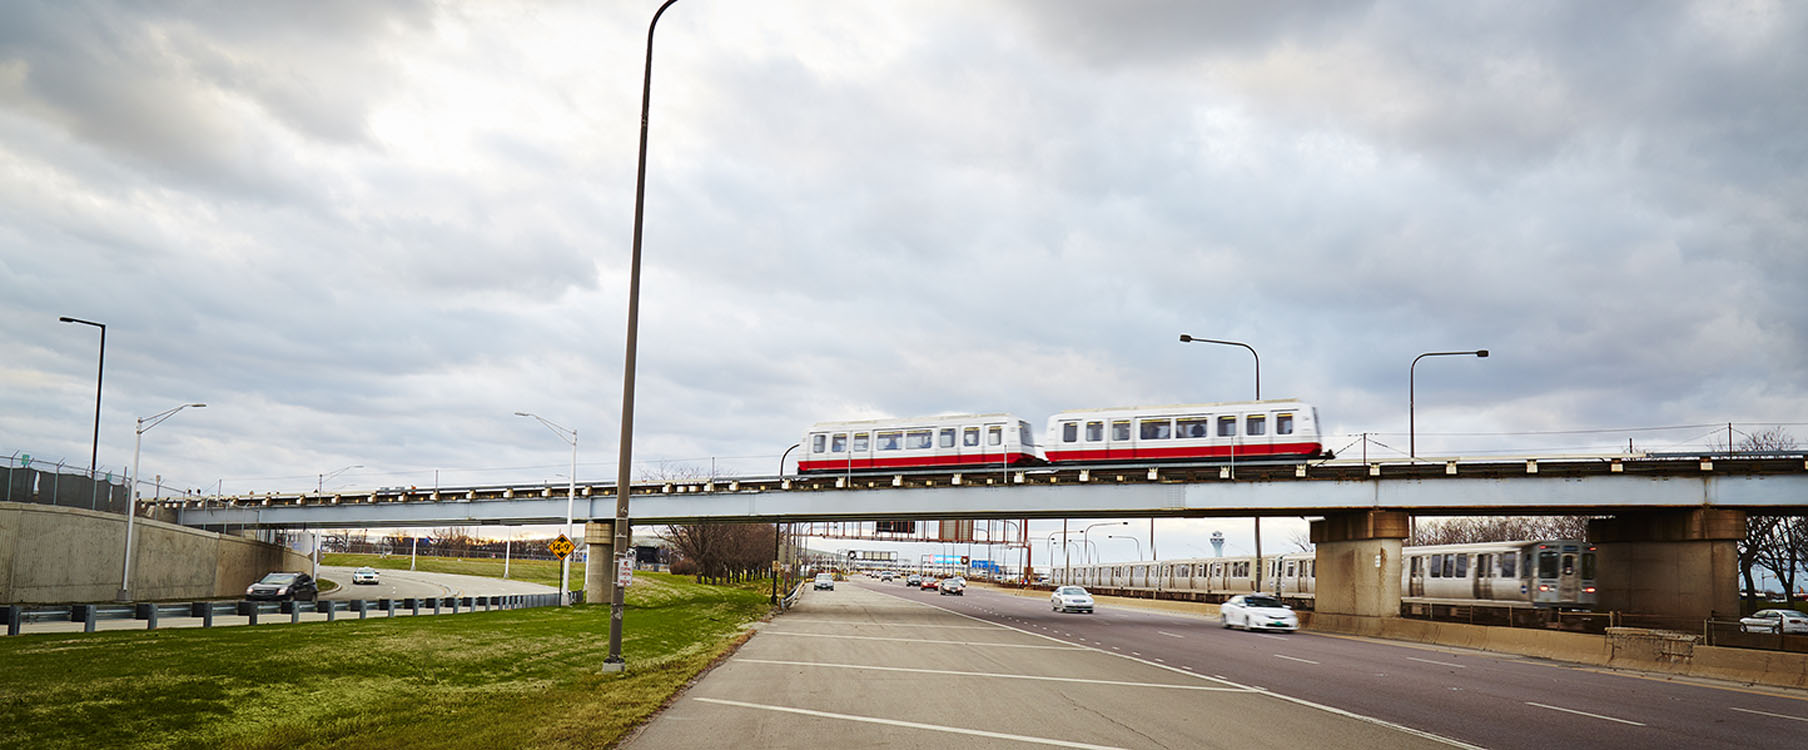 Un train rouge et blanc traversant un pont.